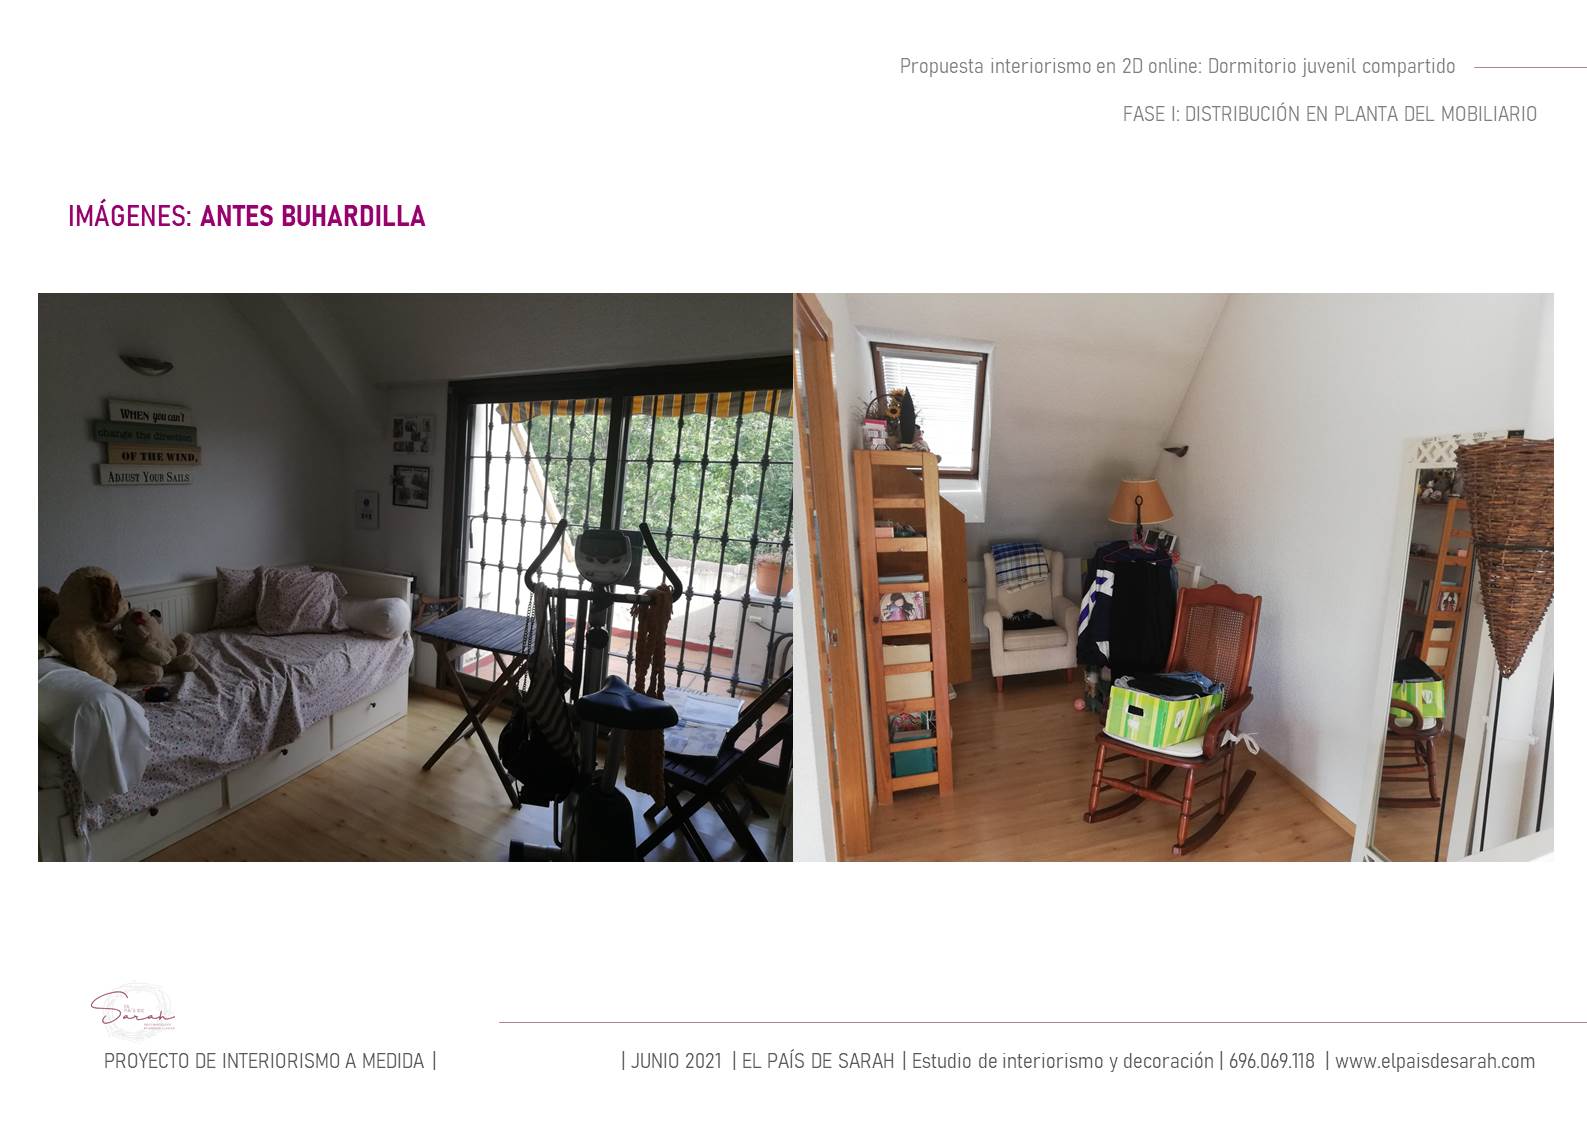 pre-proyecto_diseño_dormitorio_juvenil_compartido_interiorsmo_decoración_interiores-03